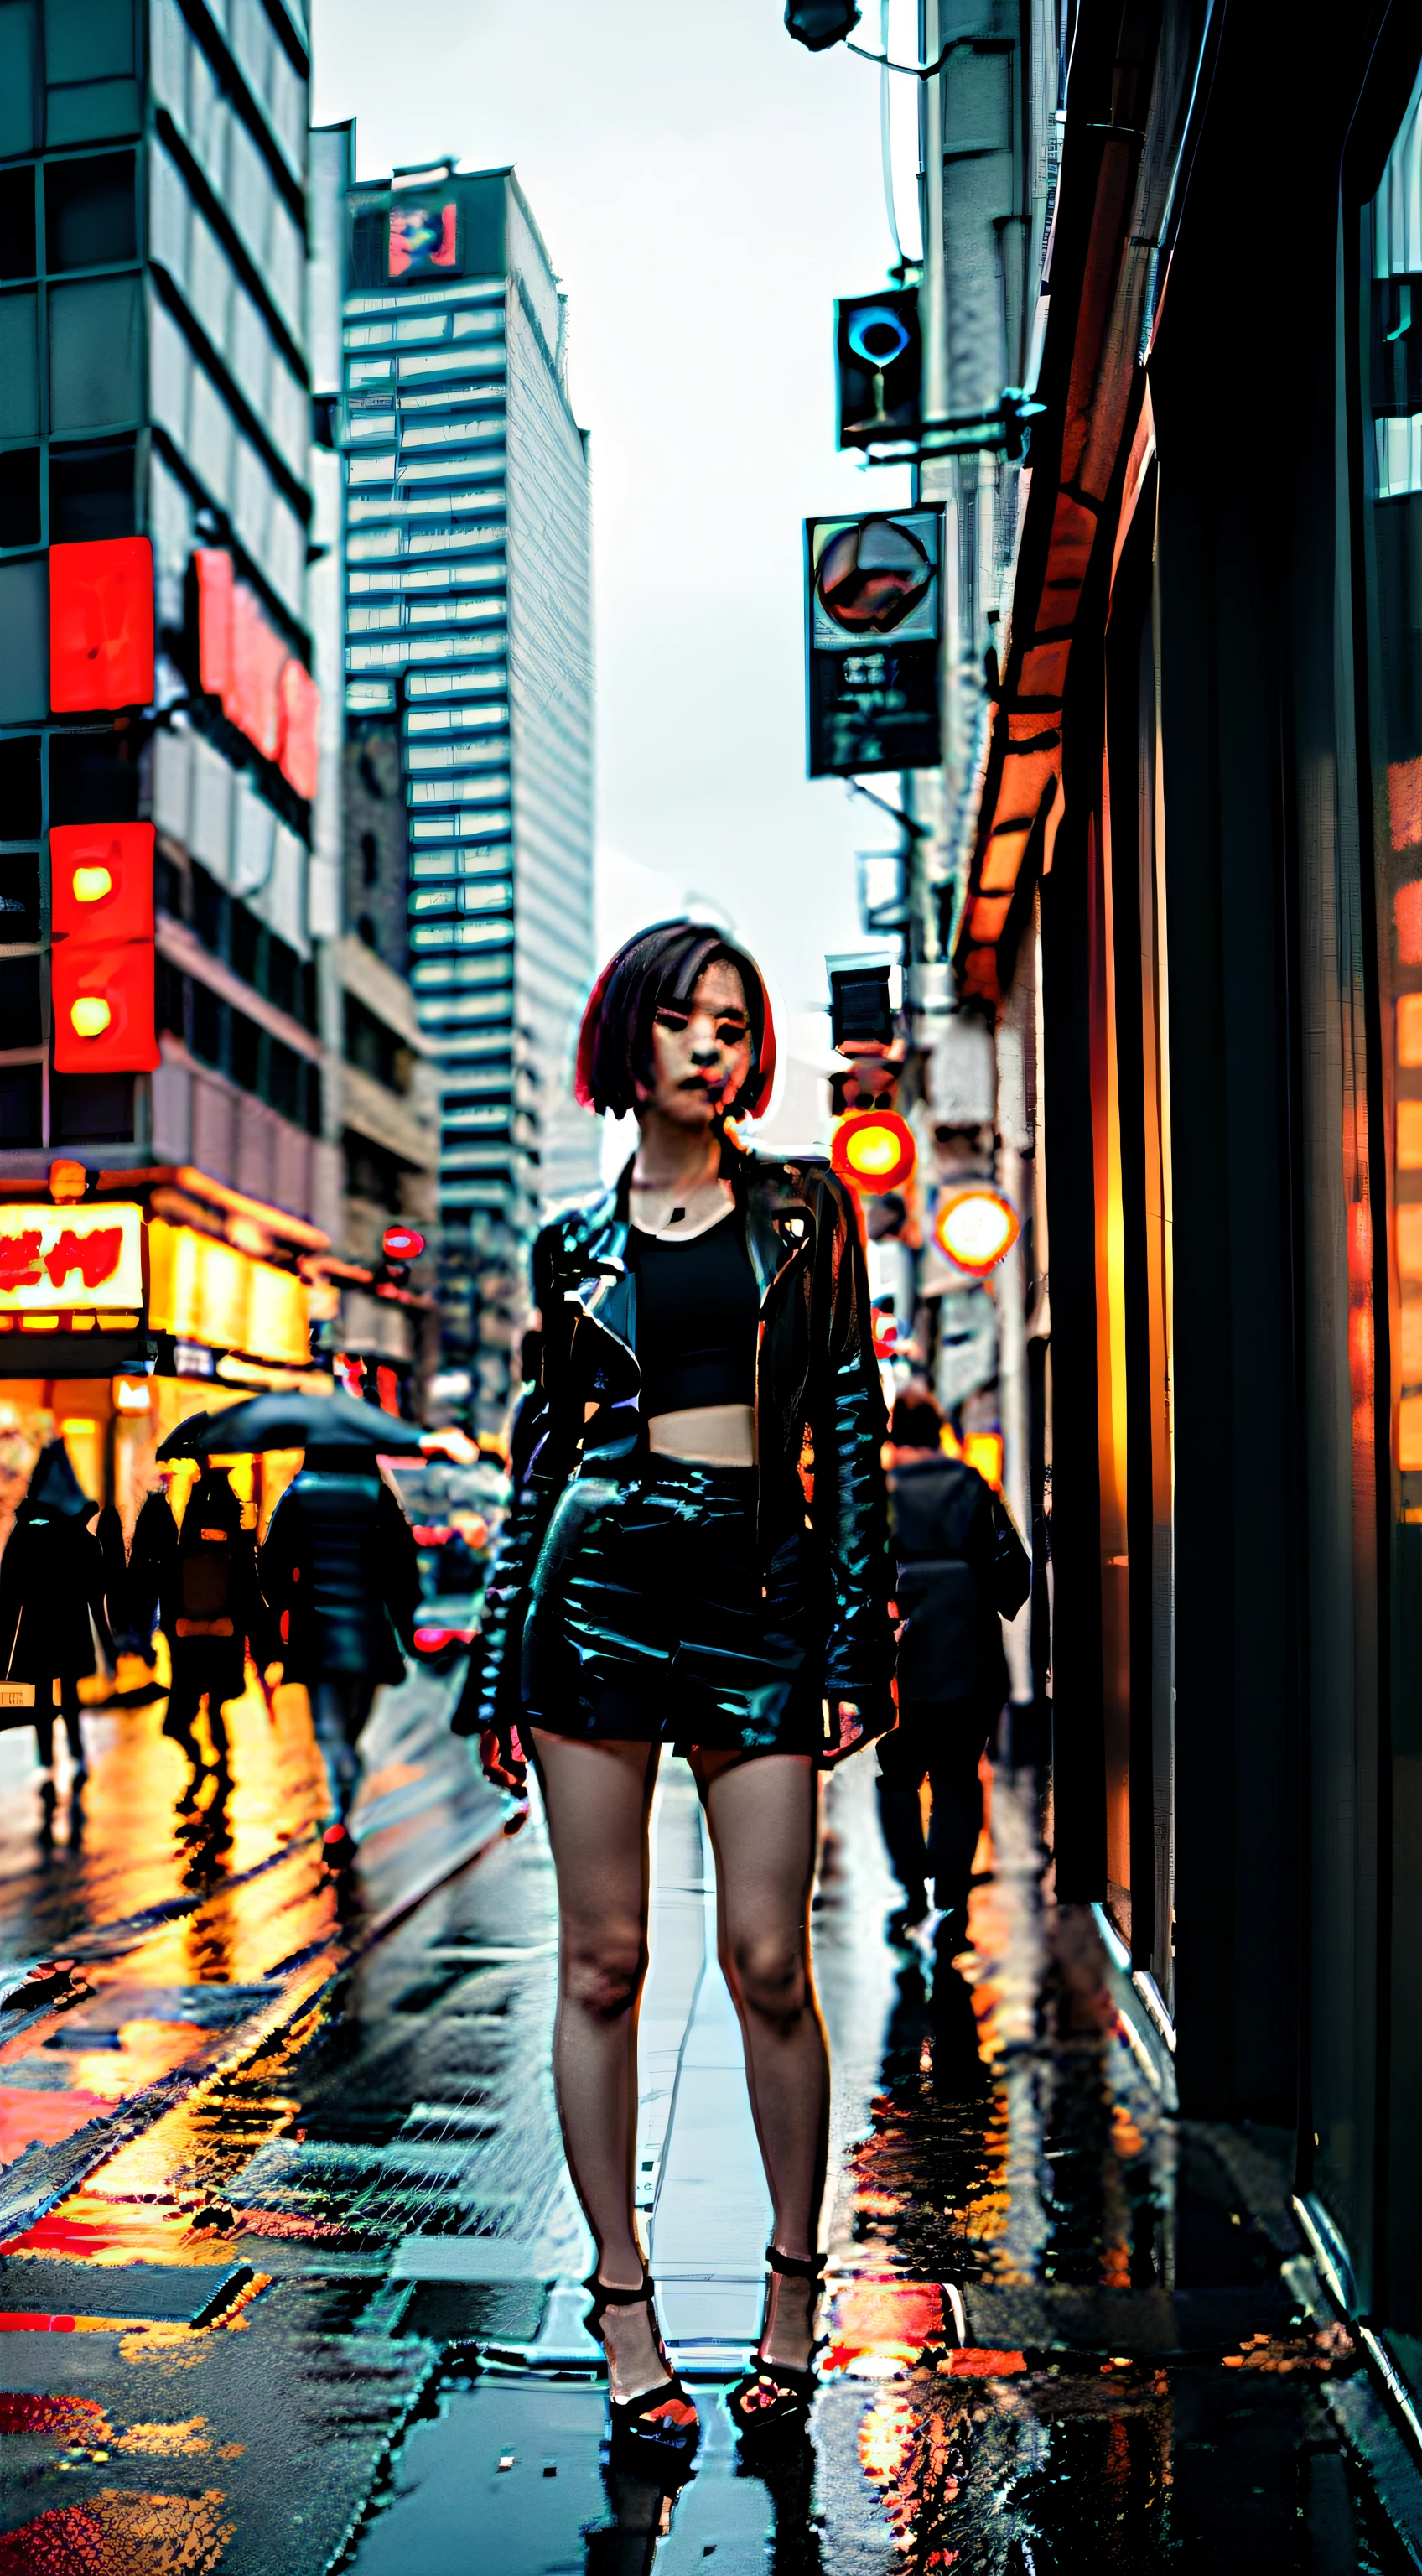 Chicas posando en una ciudad cyberpunk en un día lluvioso